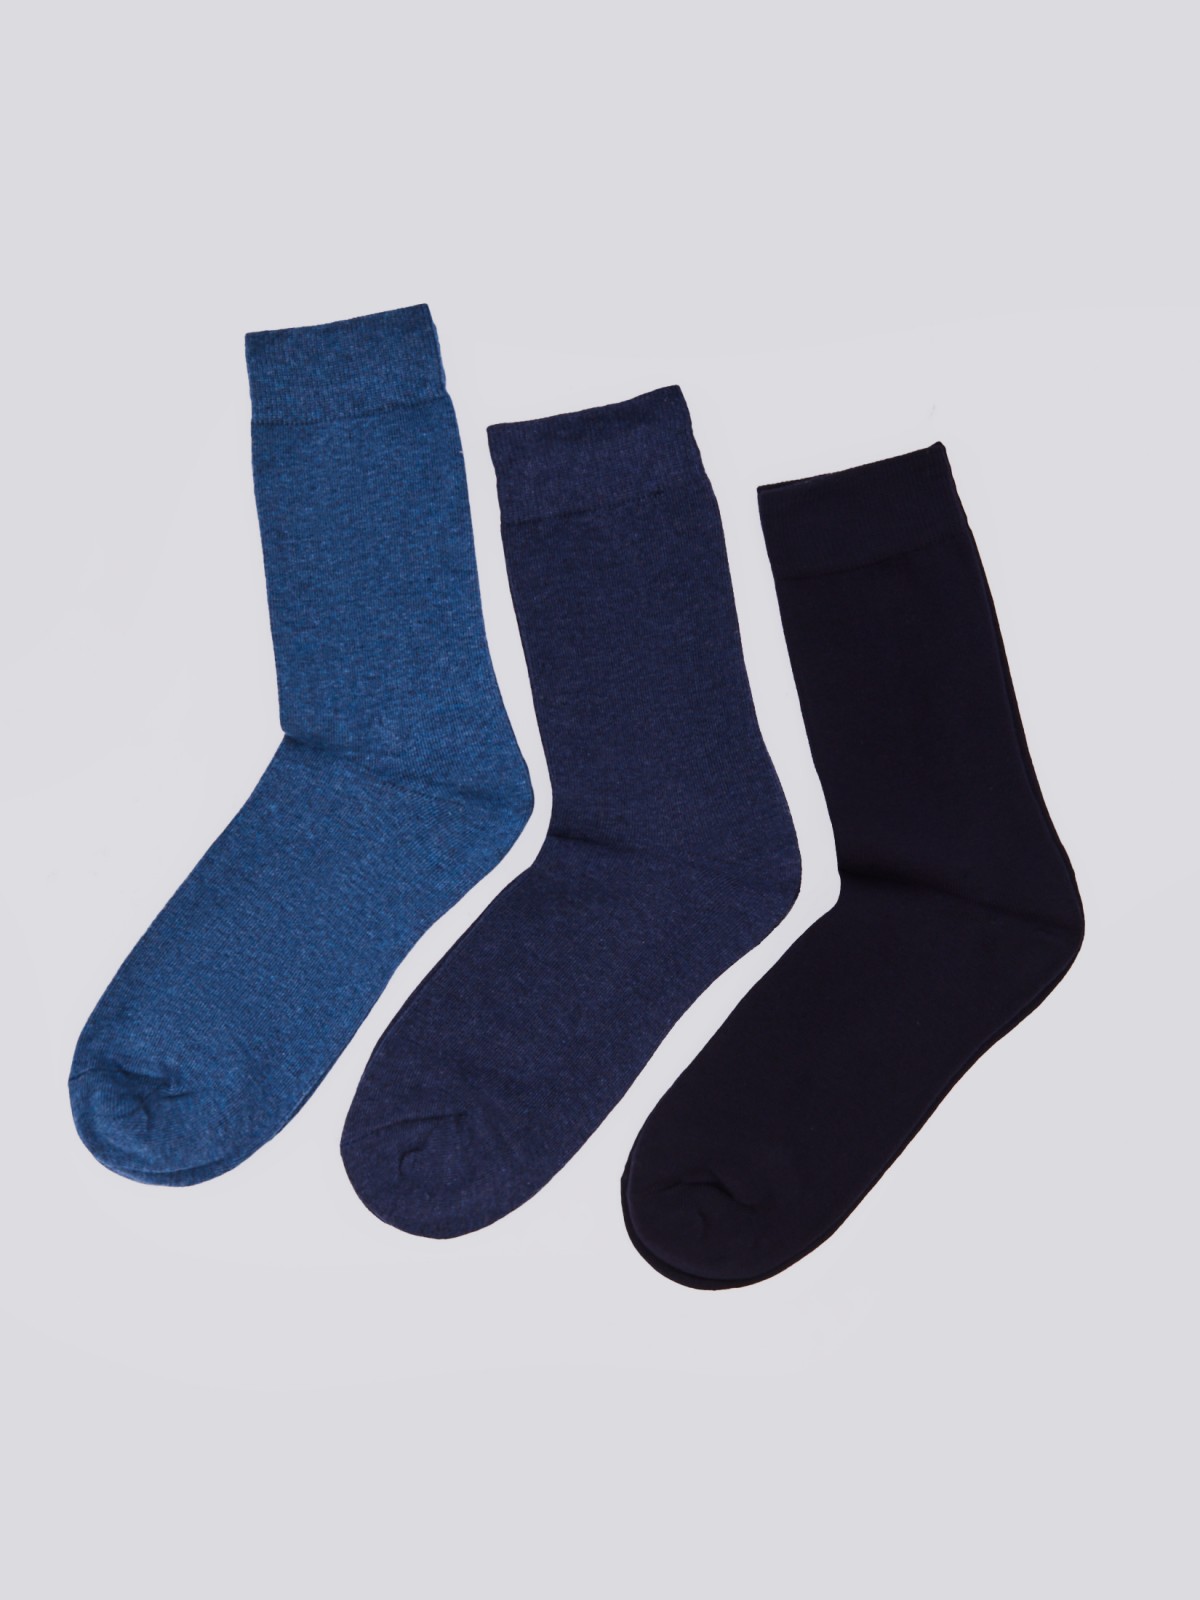 Набор носков (3 пары в комплекте) zolla 01411998J025, цвет темно-синий, размер 25-27 - фото 1